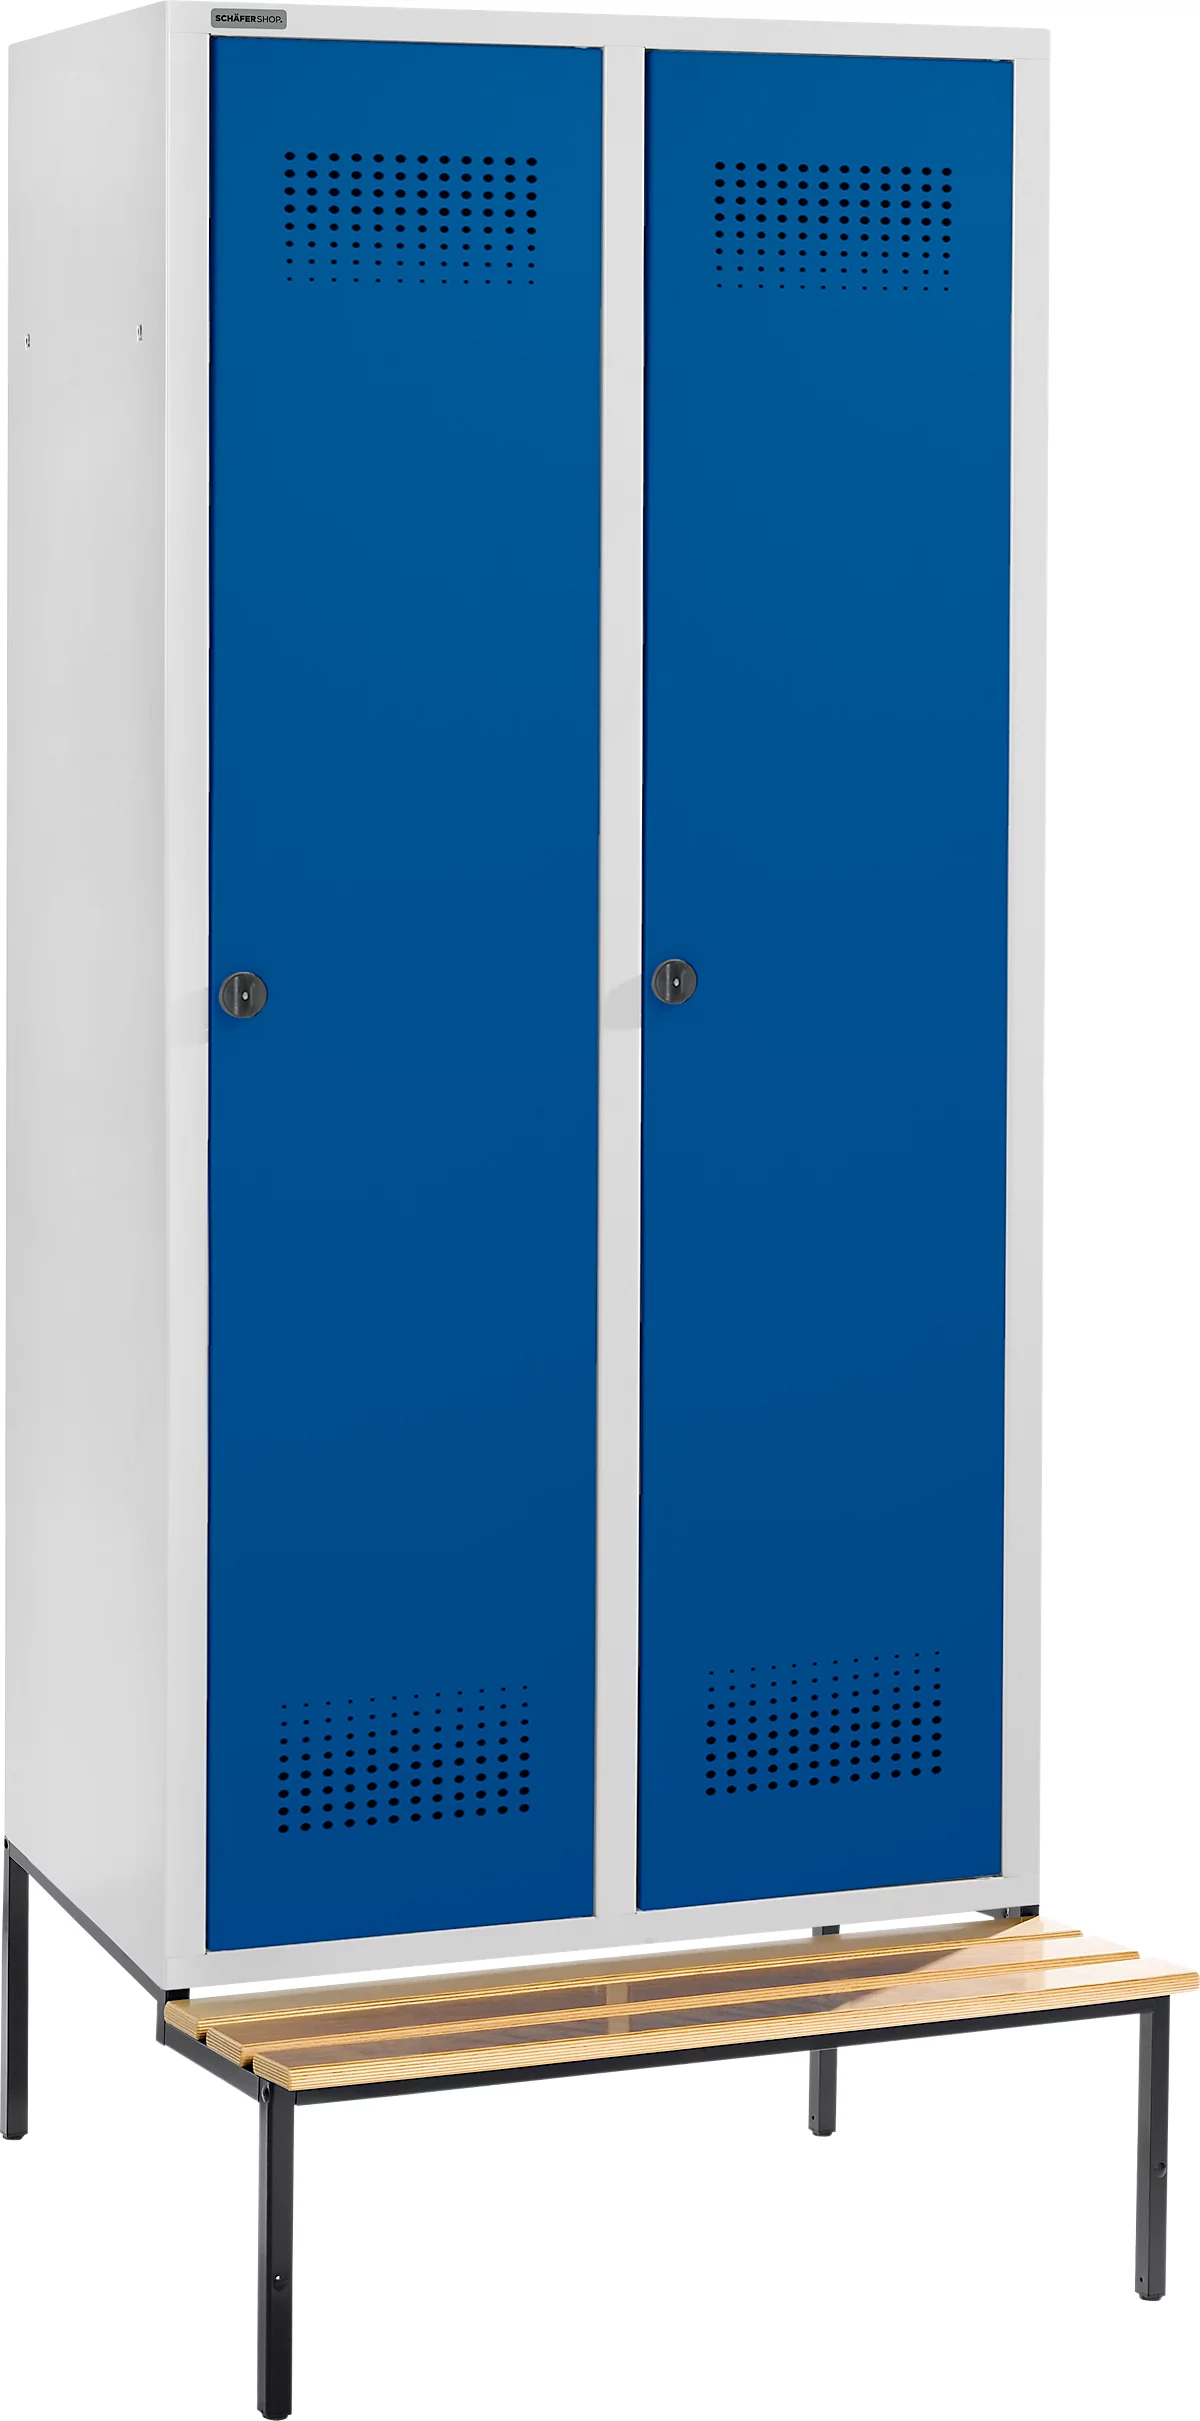 Schäfer Shop Genius Taquilla con banco, 2 compartimentos, anchura compartimento 400 mm, cierre de pasador giratorio de seguridad, gris luminoso/azul genciana